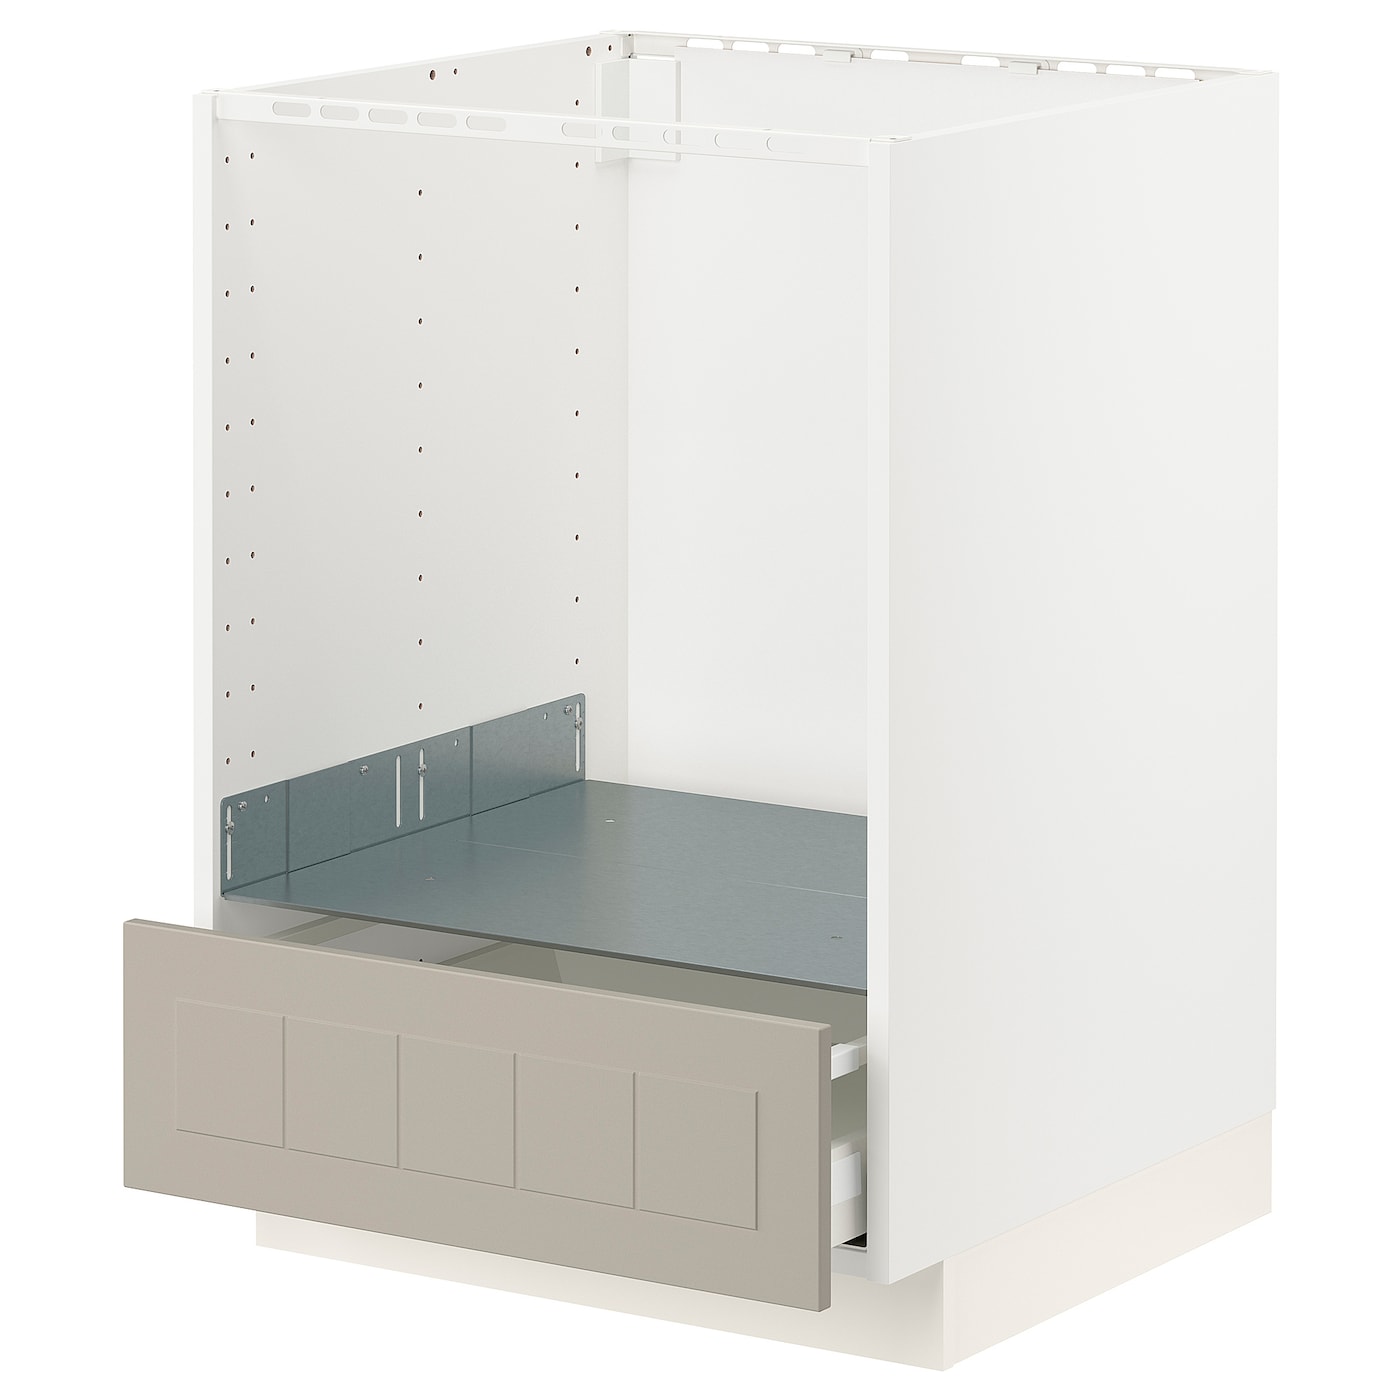 Напольный шкаф - IKEA METOD MAXIMERA, 88x62x60см, белый/темно-бежевый, МЕТОД МАКСИМЕРА ИКЕА